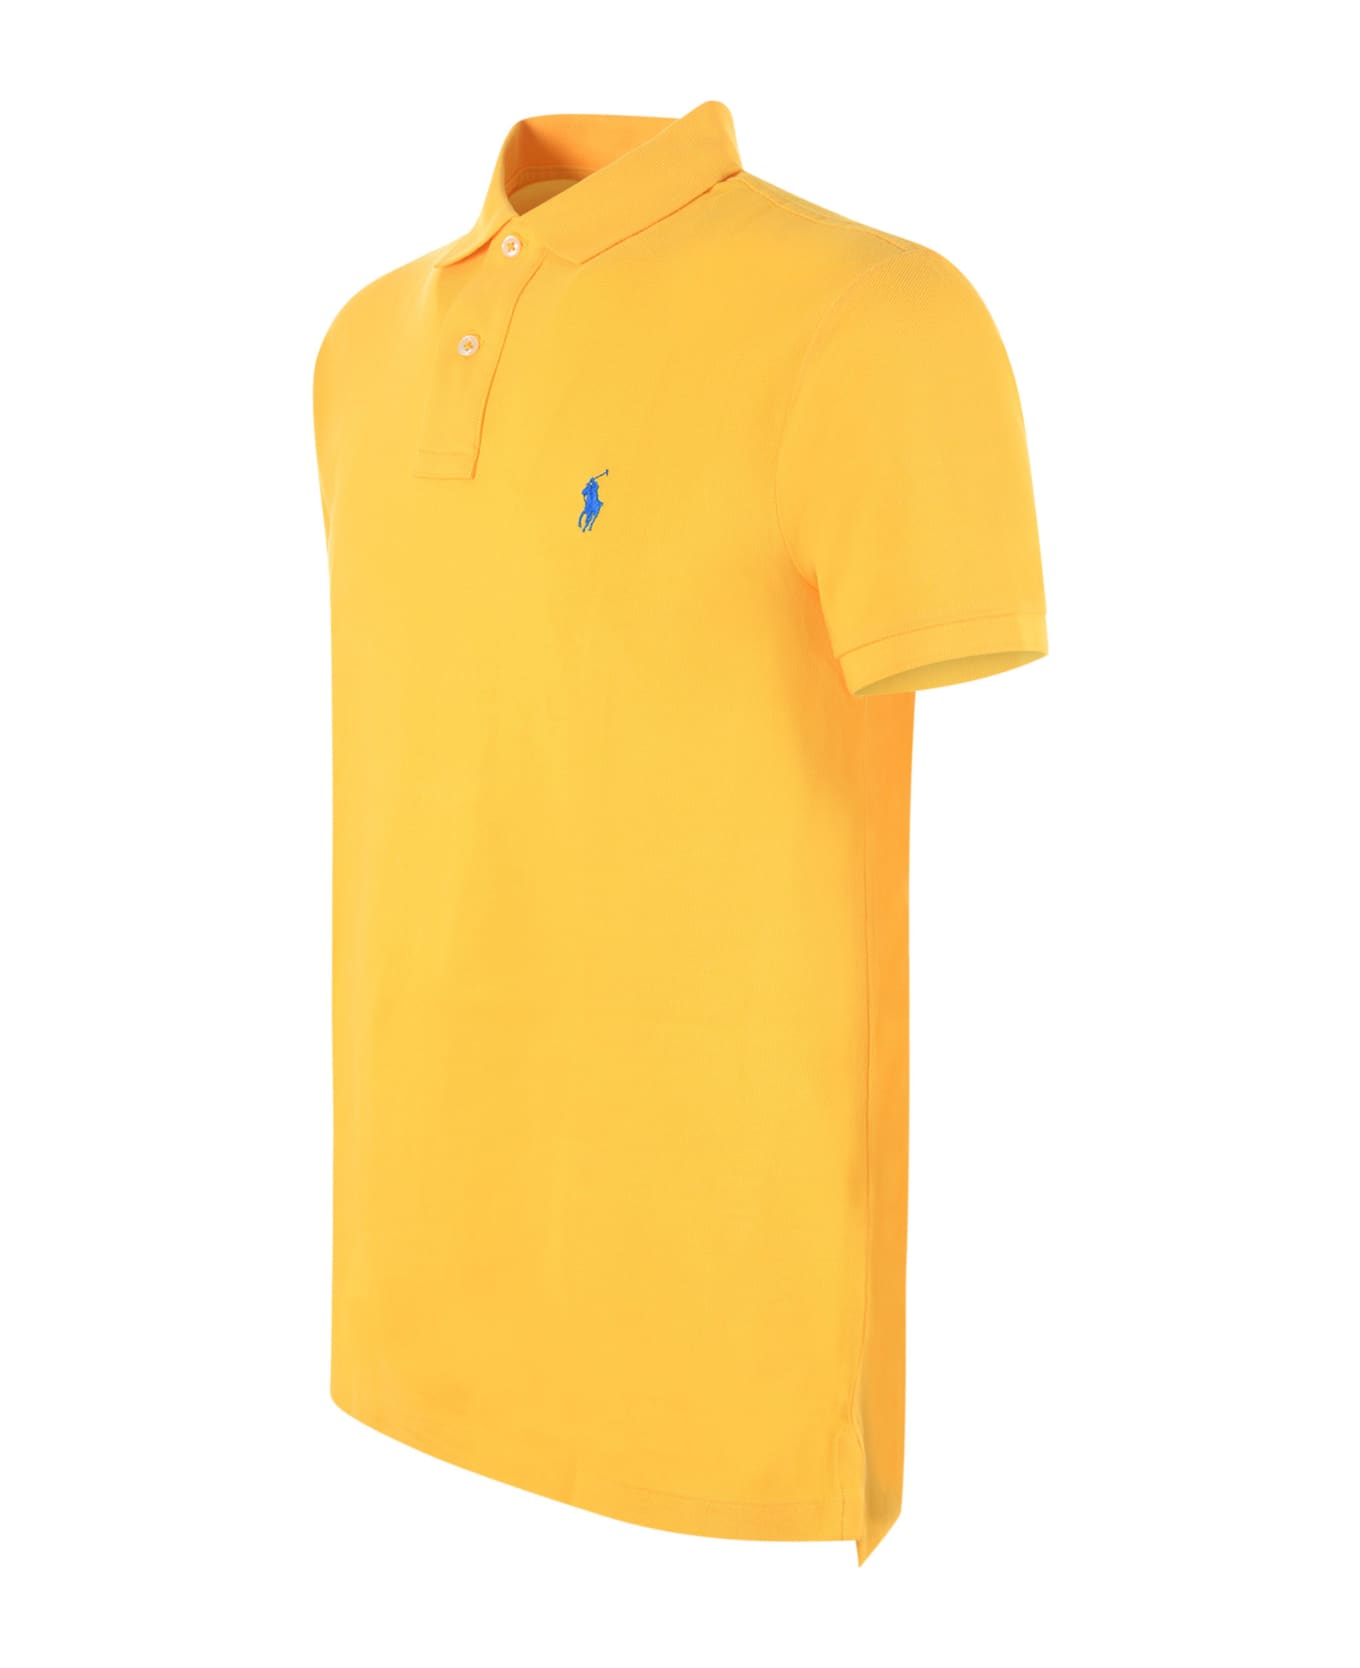 Polo Ralph Lauren "polo Ralph Lauren" Polo Shirt - Giallo ポロシャツ